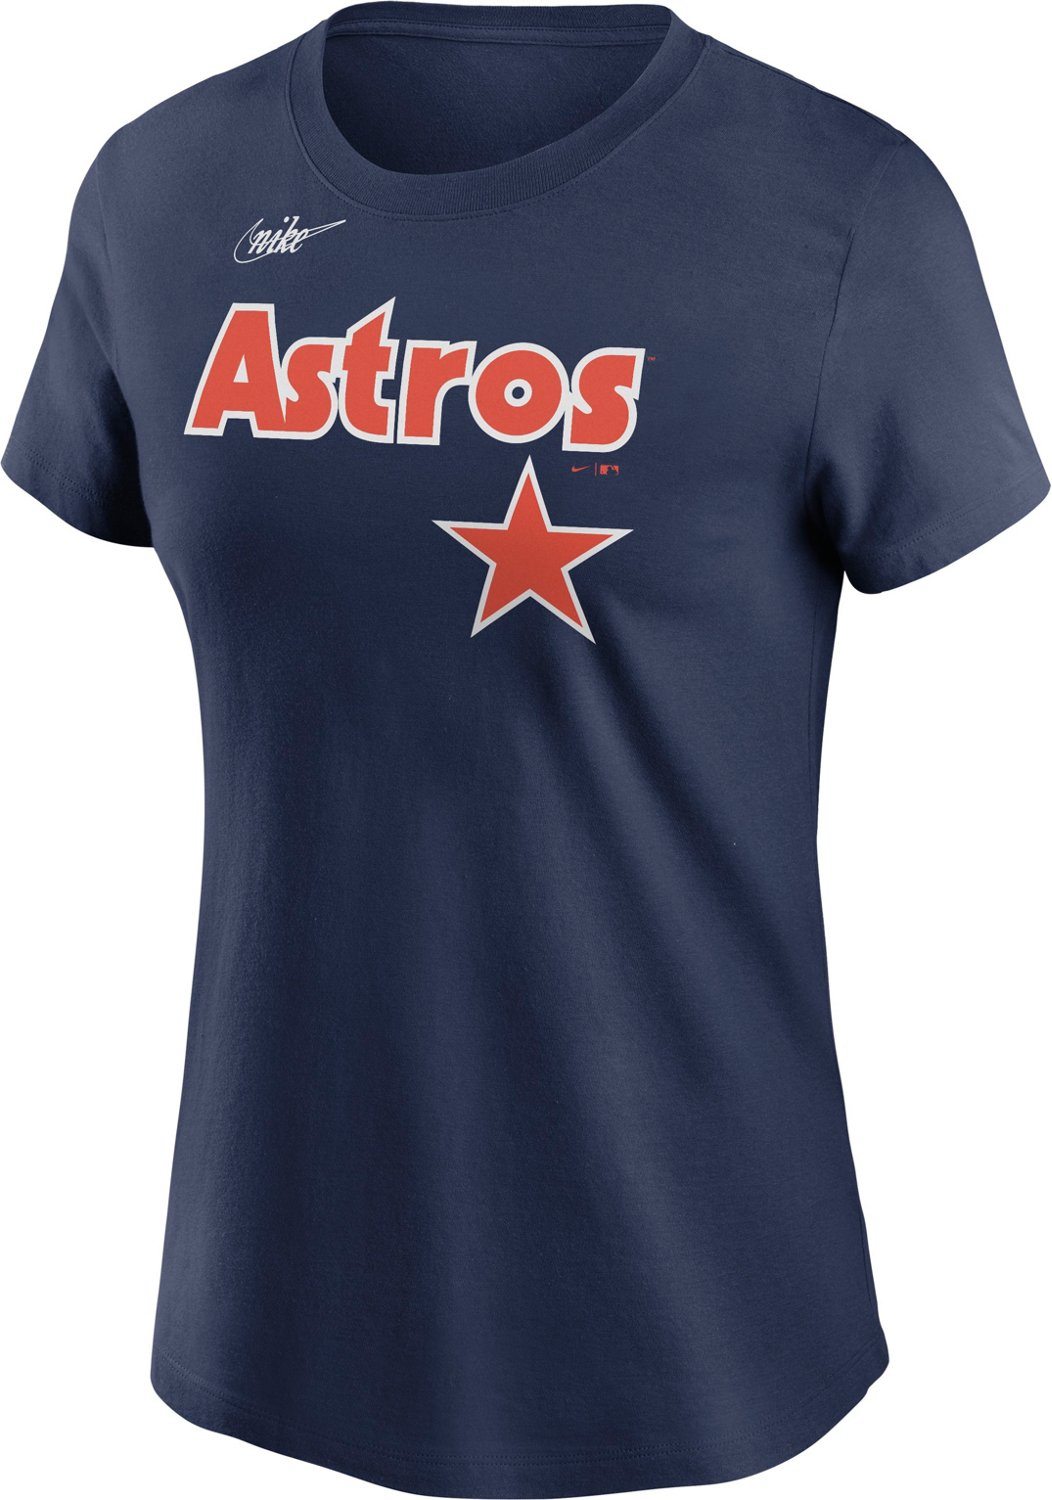 academy women's astros shirt